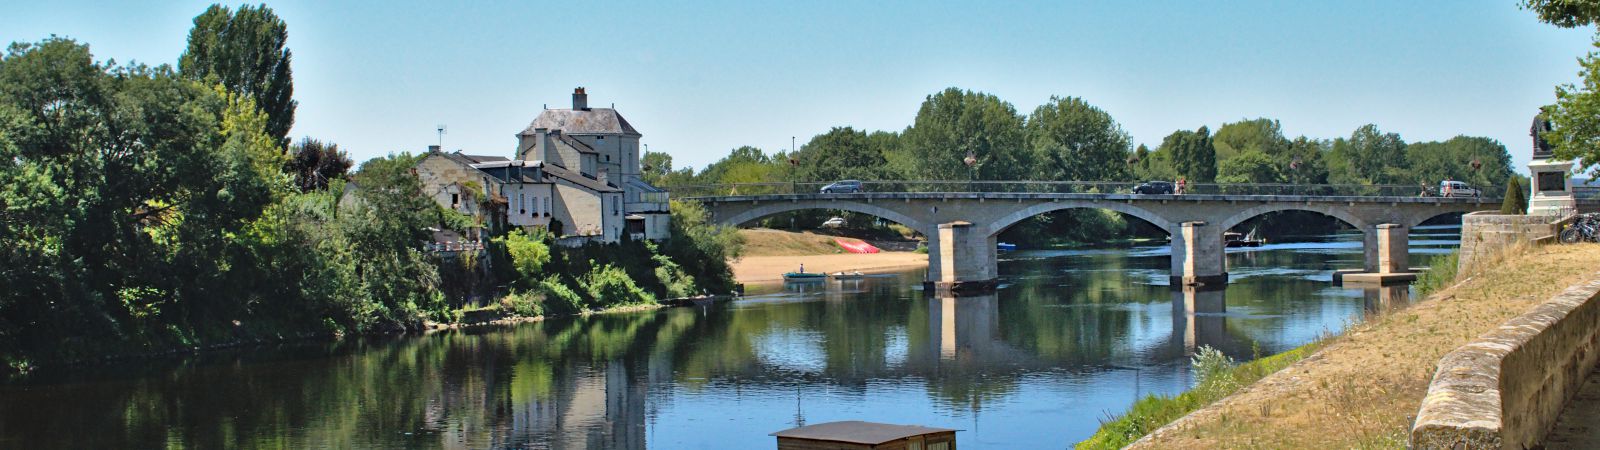 Frankrijk brug met rivier